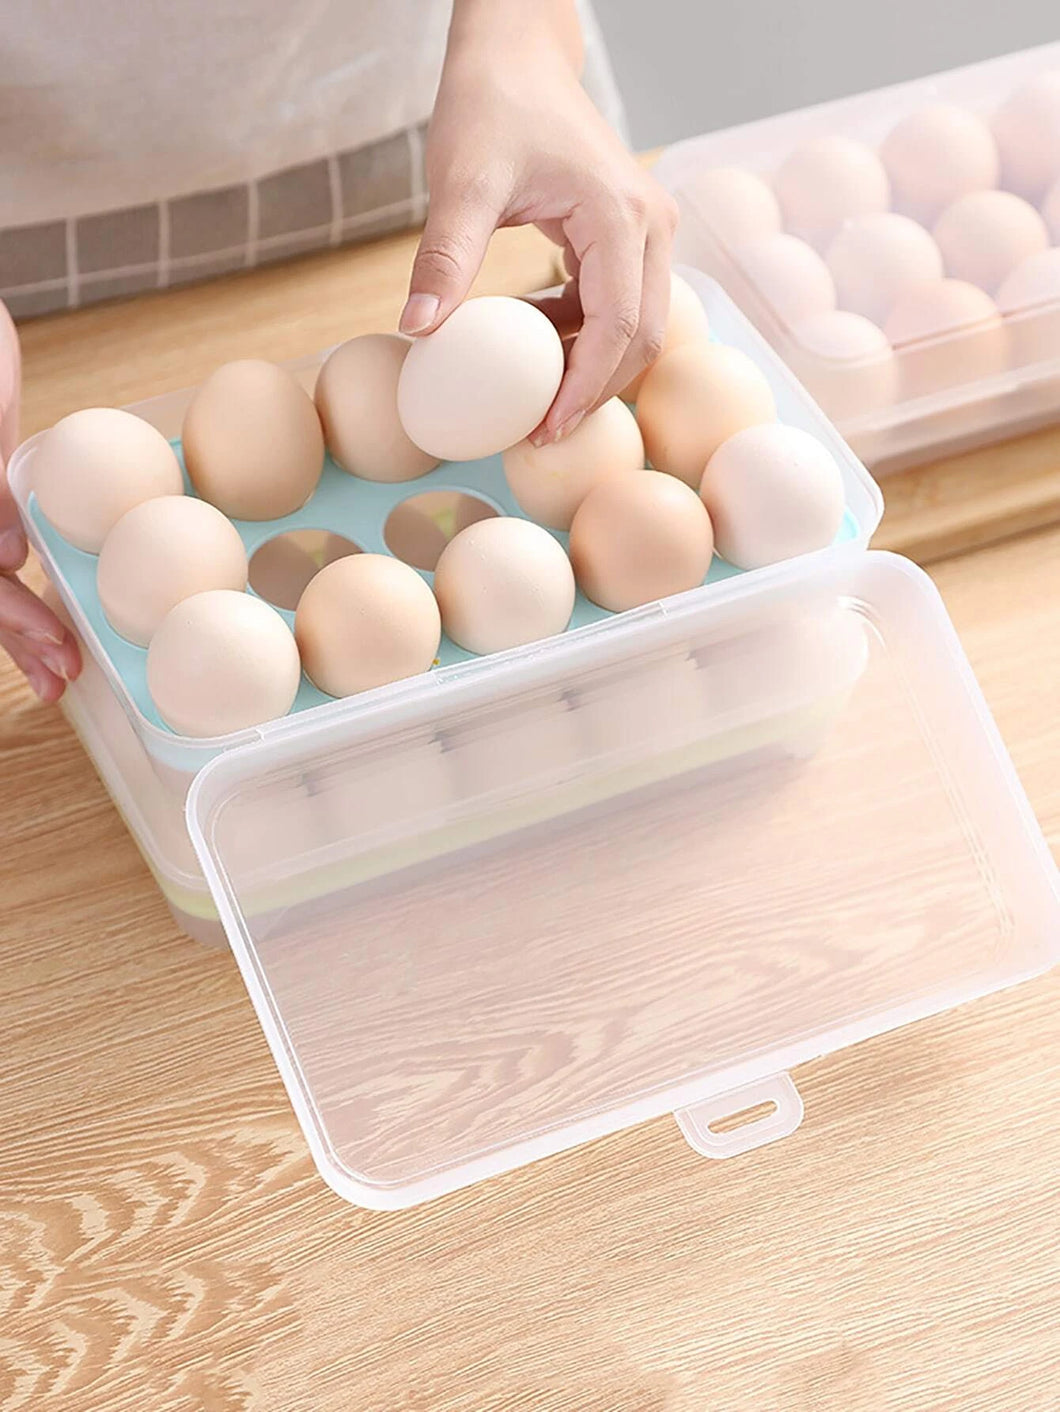 Organizador de huevos, plástico, color blanco transparente, capacidad para 15 huevos